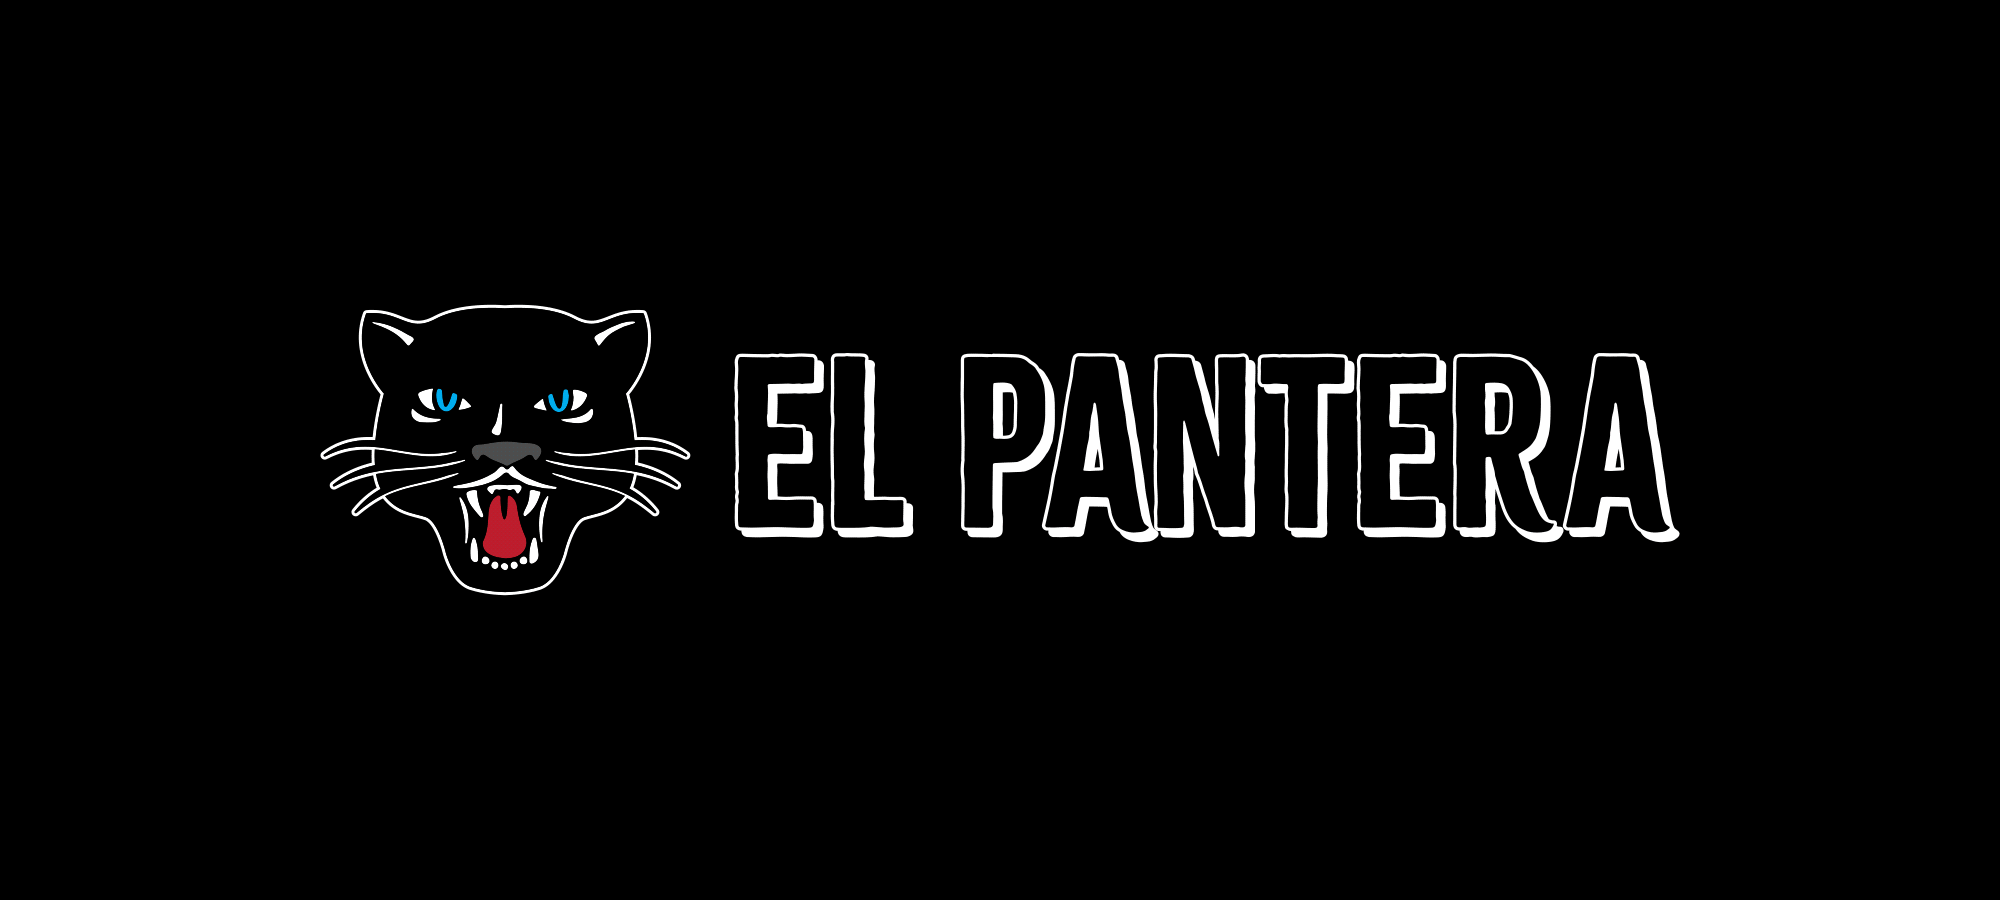 Pantera_logo